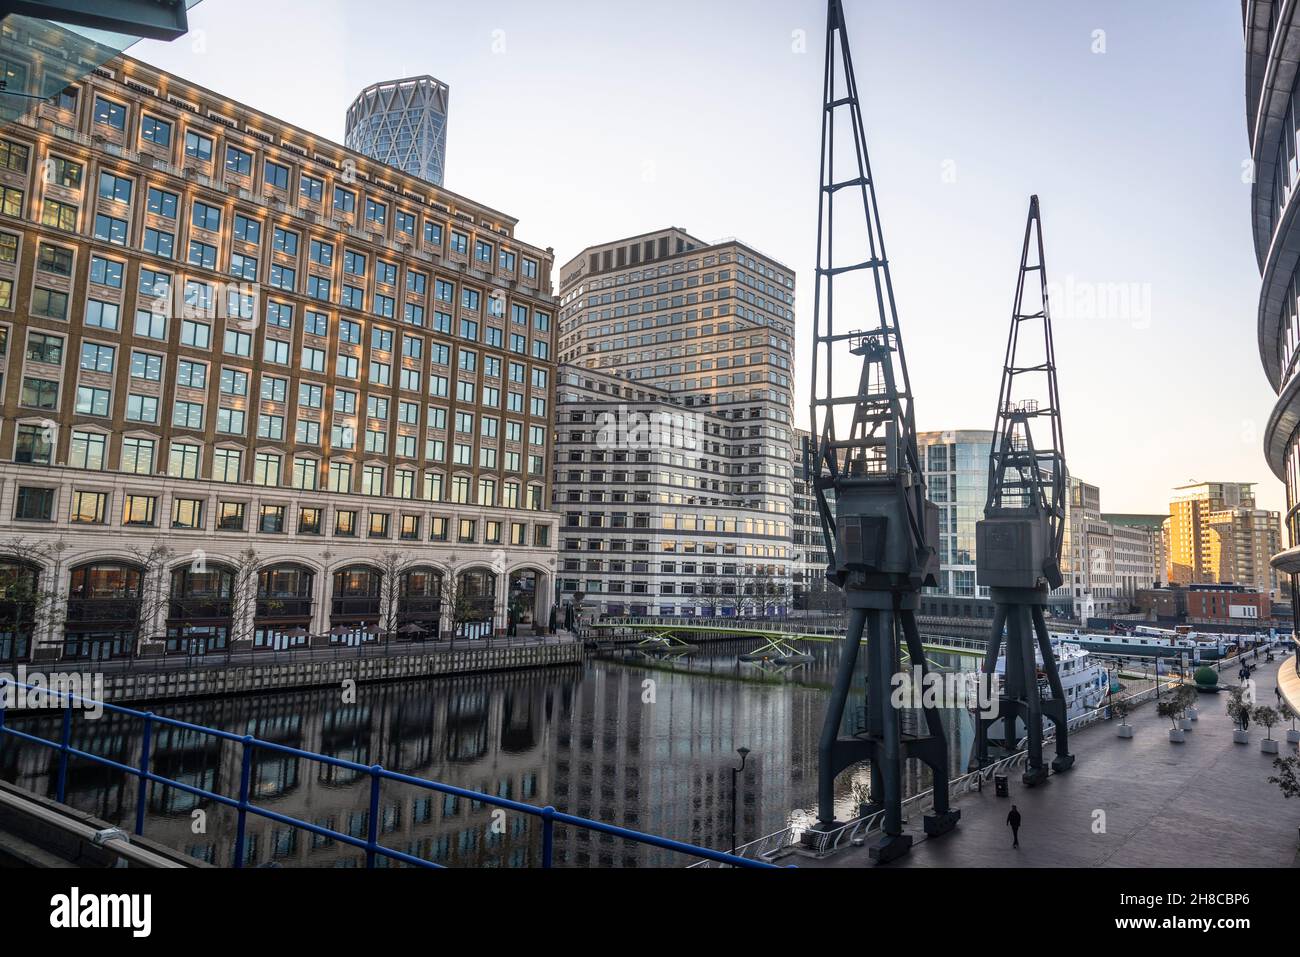 Énormes grues industrielles, quartier financier de Canary Wharf sur l'île de Dogs, Londres, Angleterre, Royaume-Uni Banque D'Images